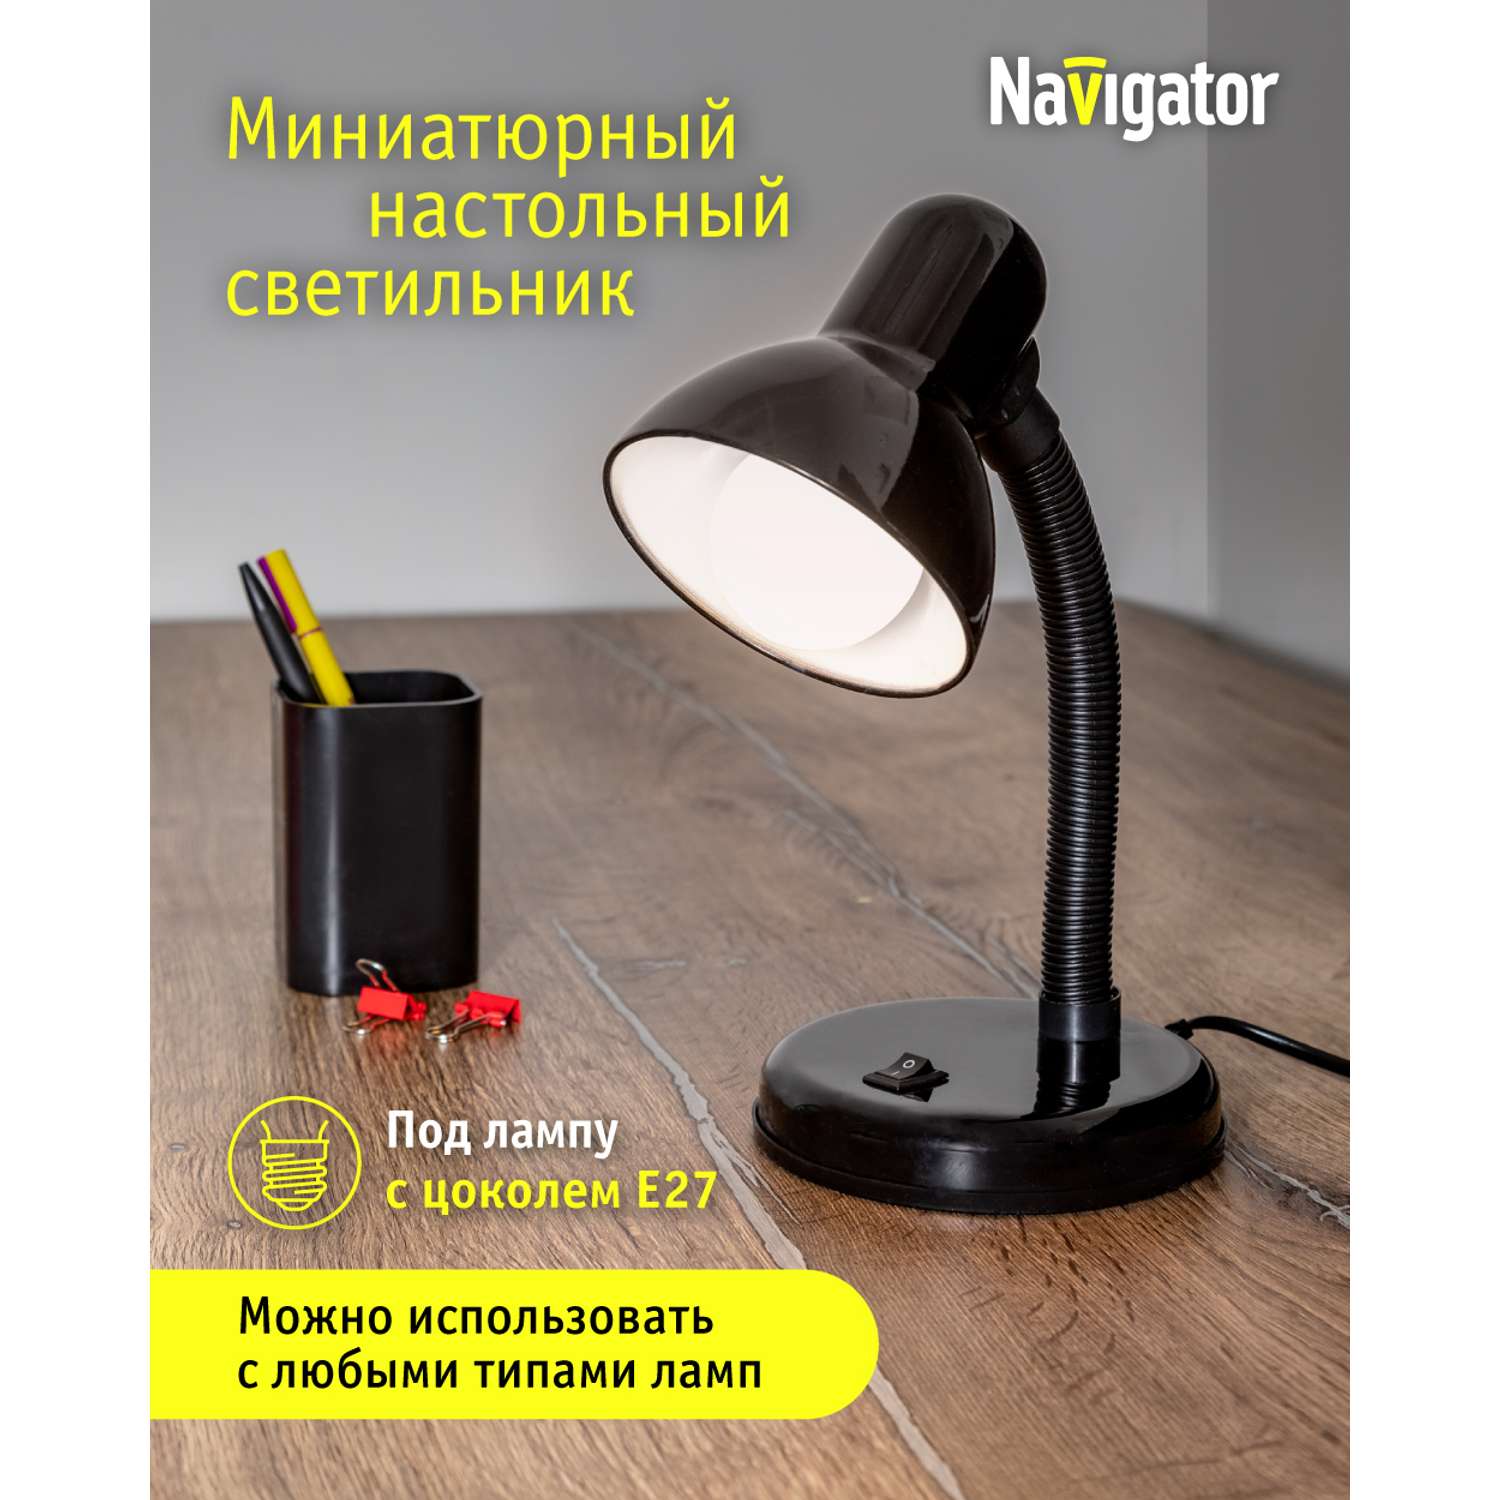 Лампа настольная navigator черная на основании под лампу с цоколем Е27 - фото 1